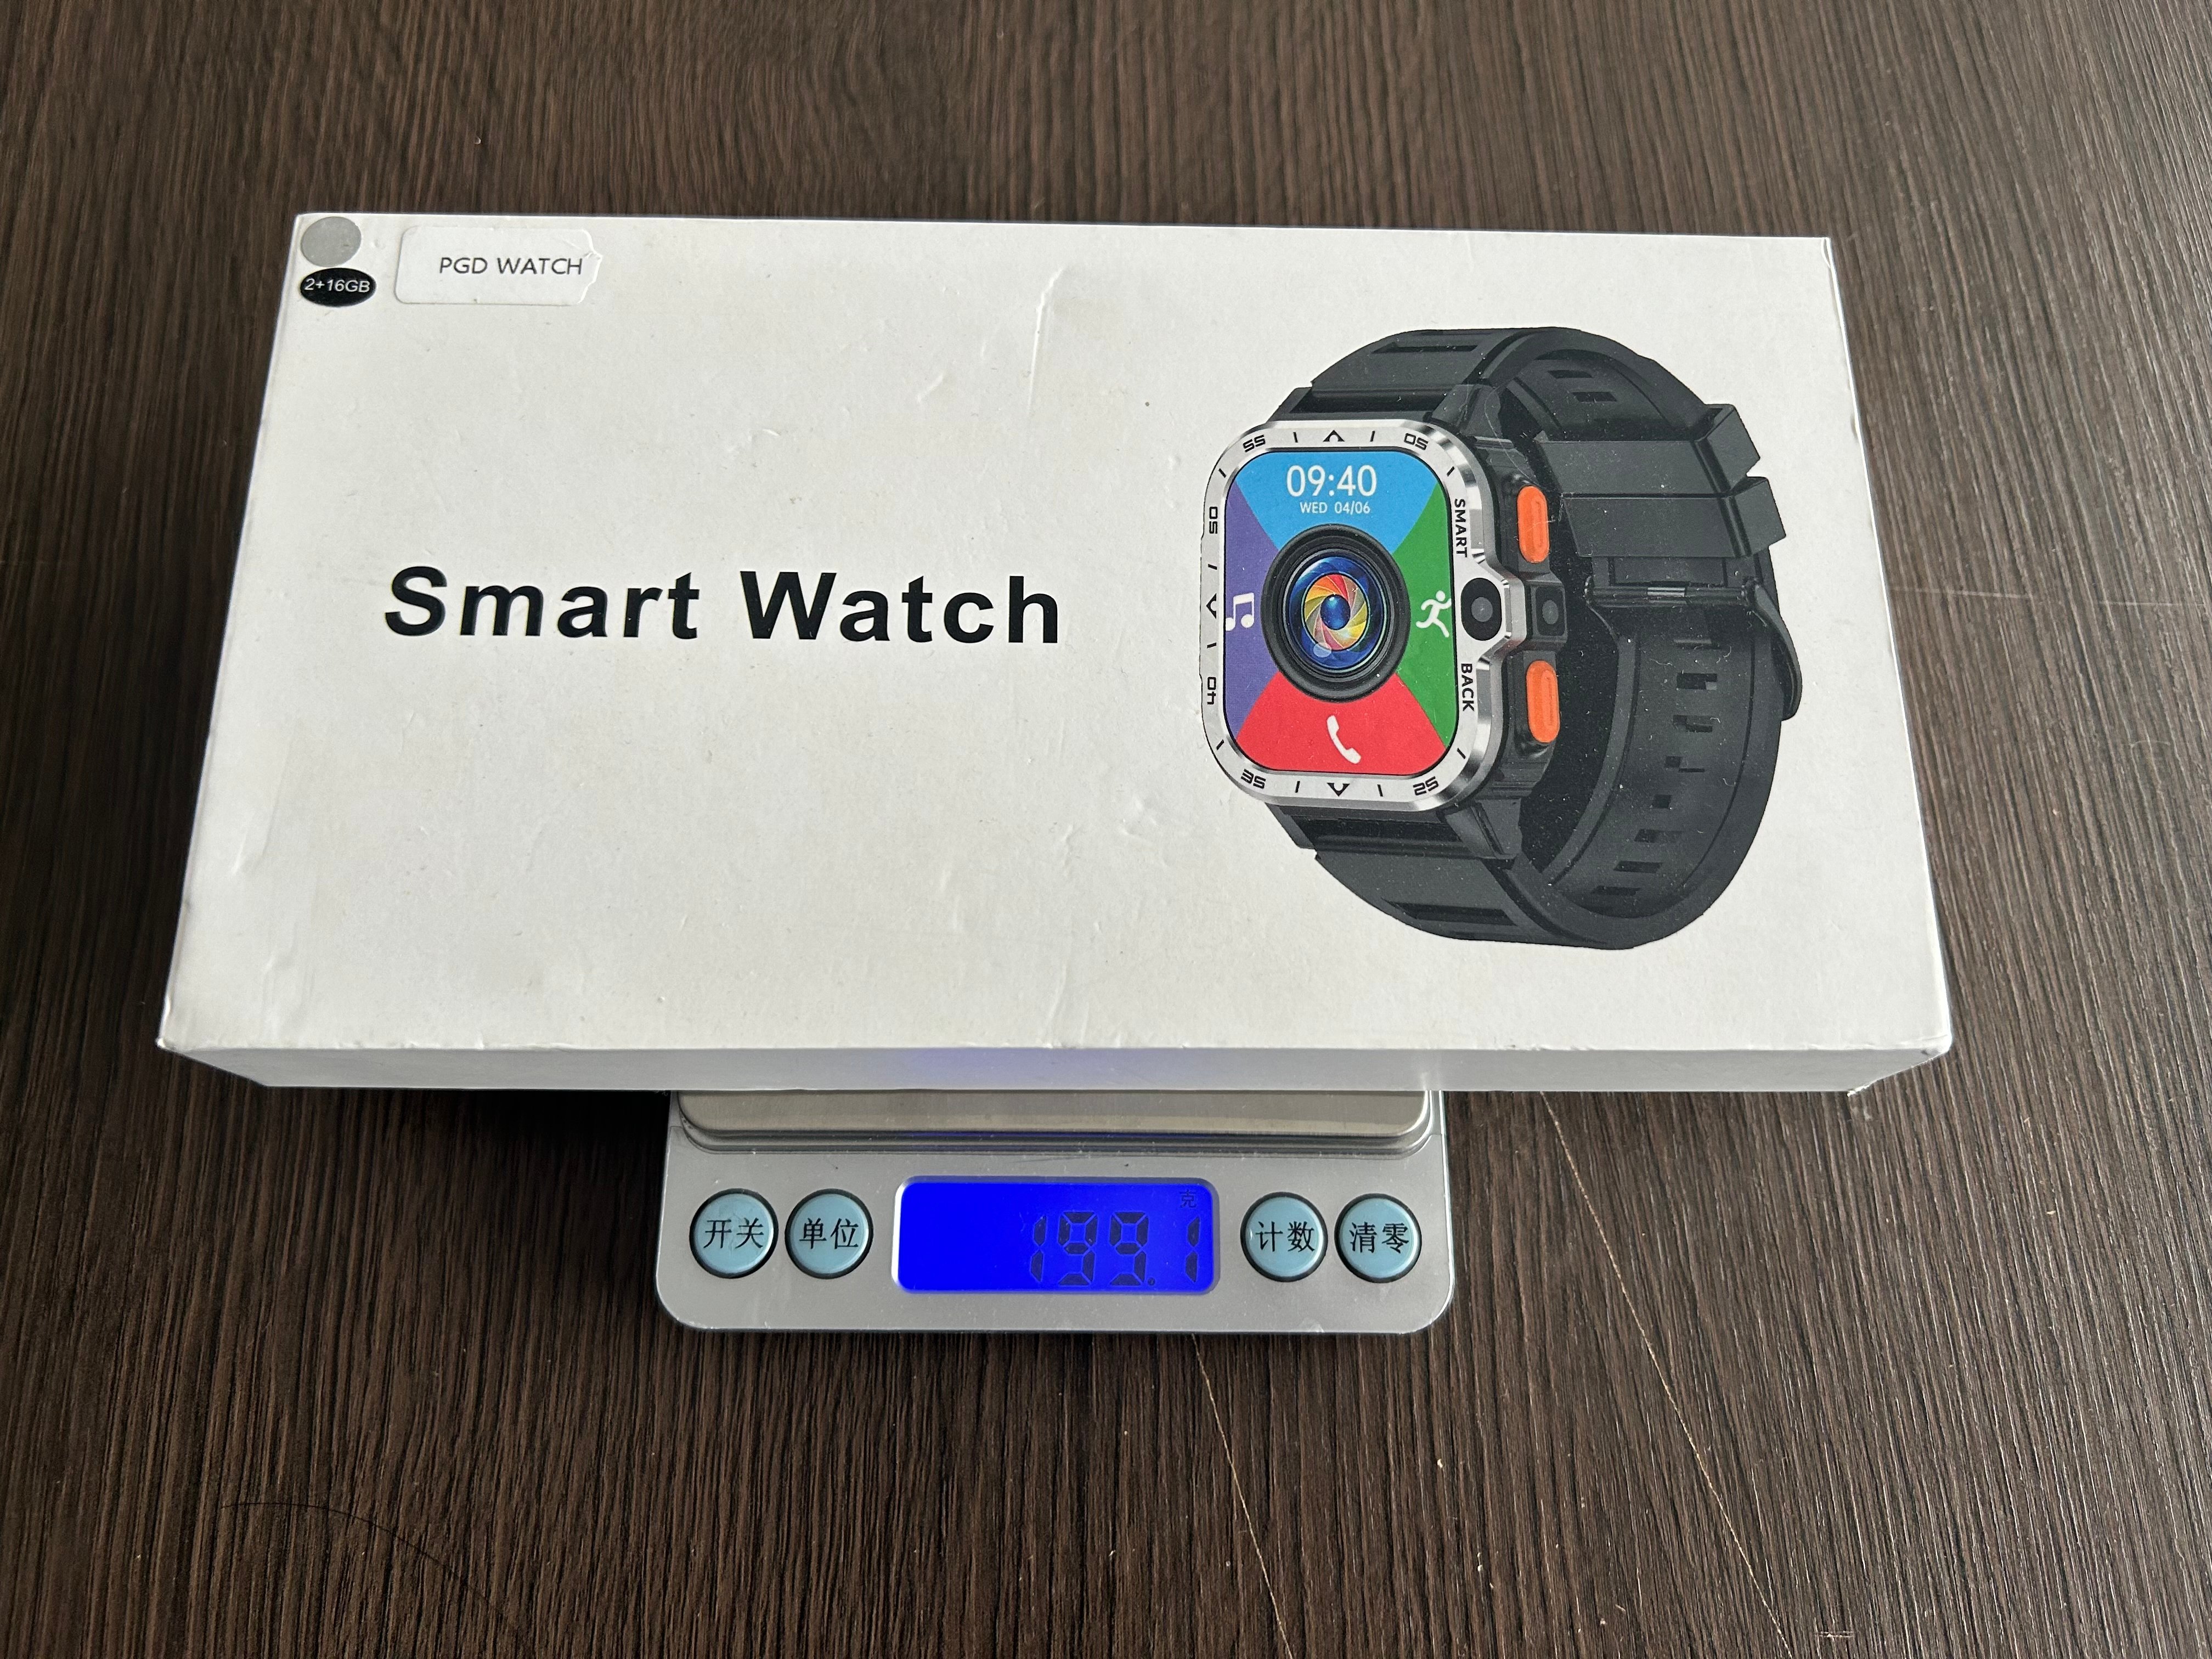 Montre intelligente PGD et PG999 : comparaison des meilleures montres intelligentes Android 4G-Shenzhen Shengye Technology Co., Ltd